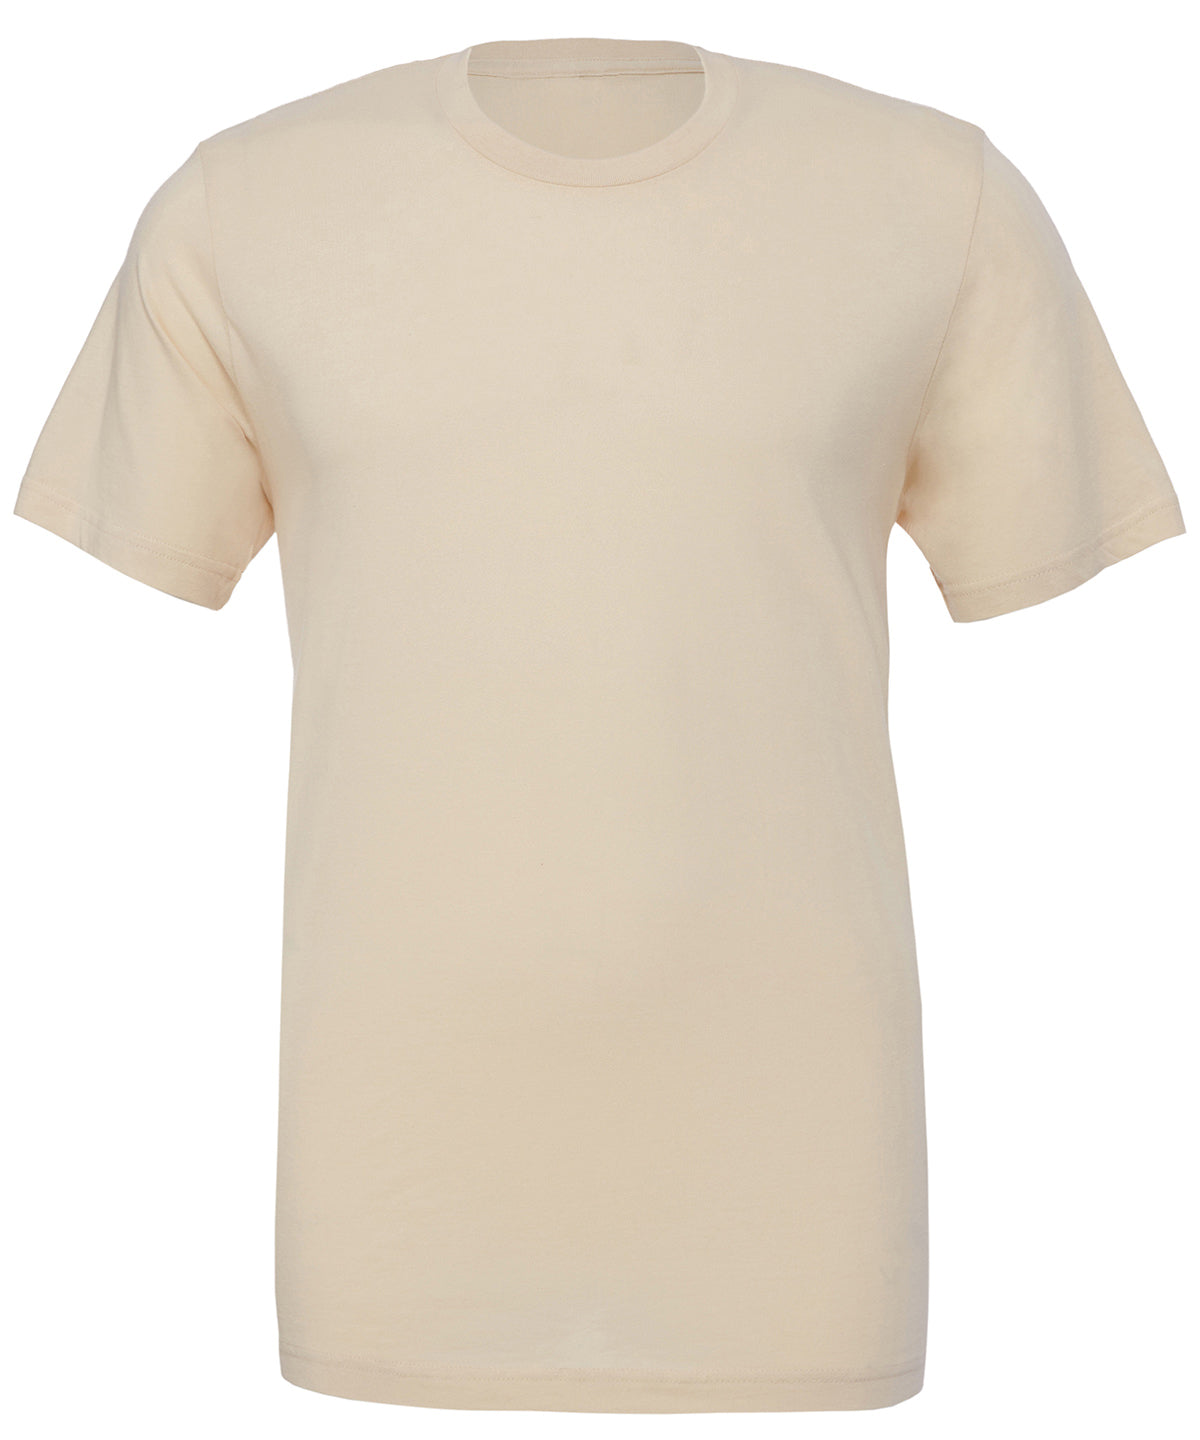 Bella Canvas Unisex Jersey Crew Neck T-Shirt - Soft Cream